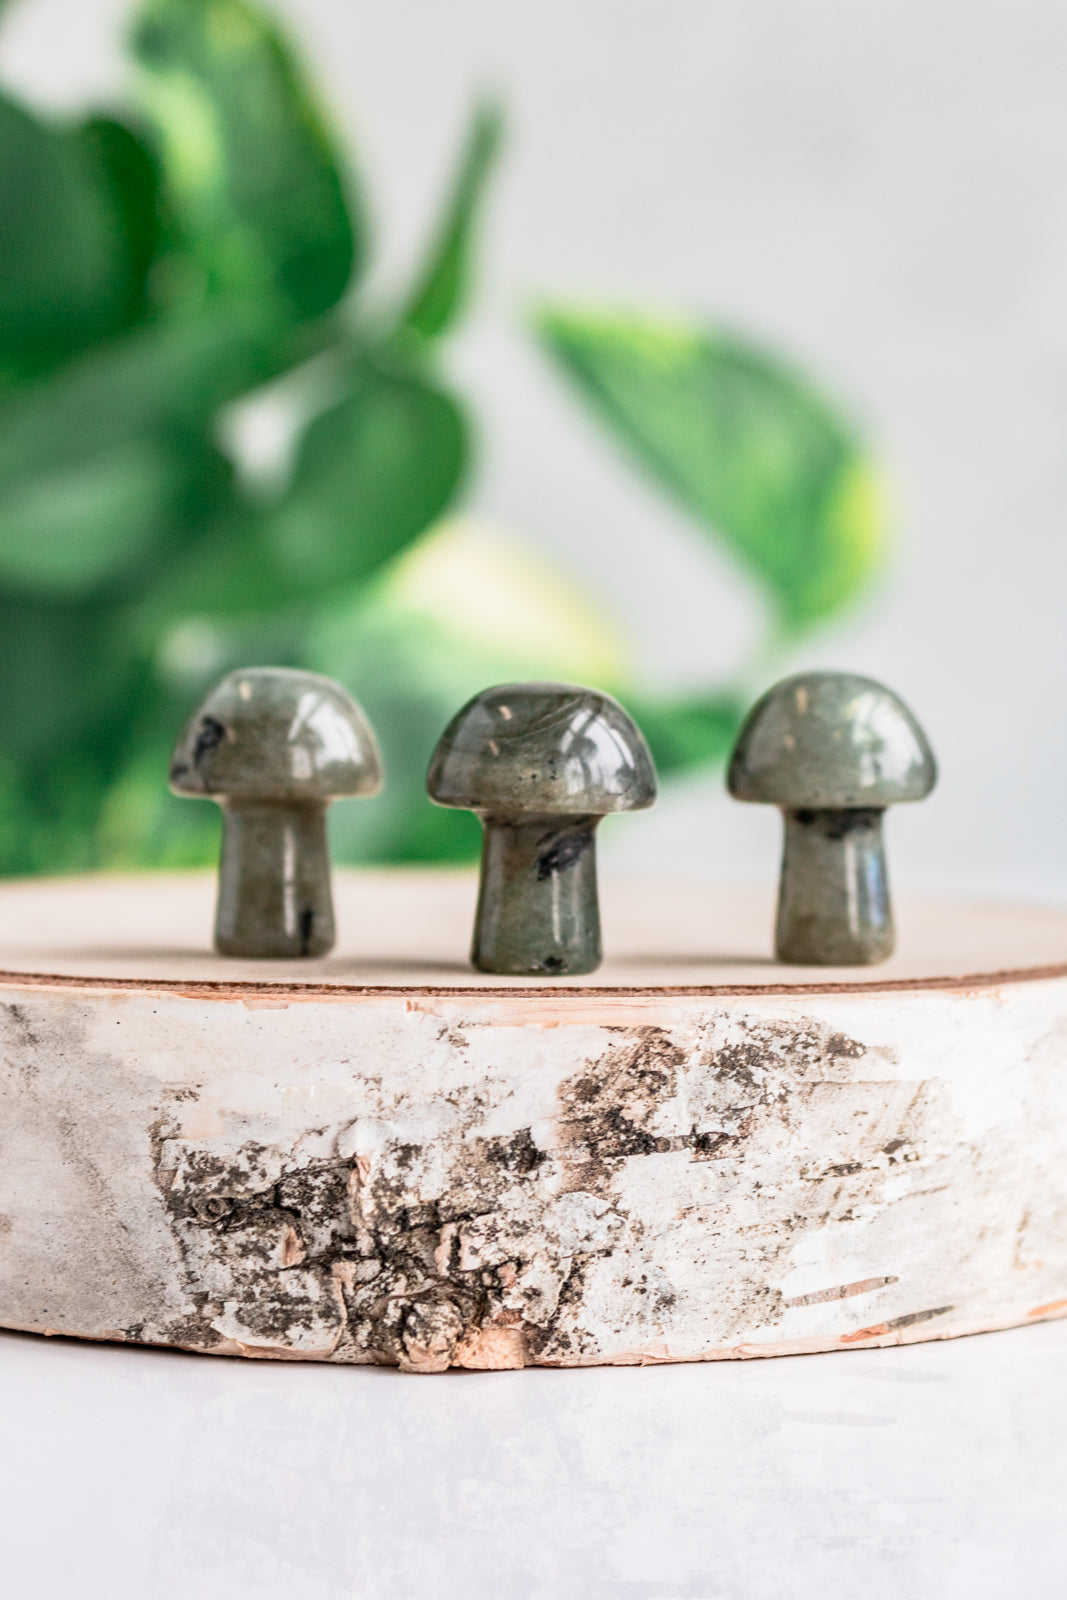 green labradorite mushroom crystals